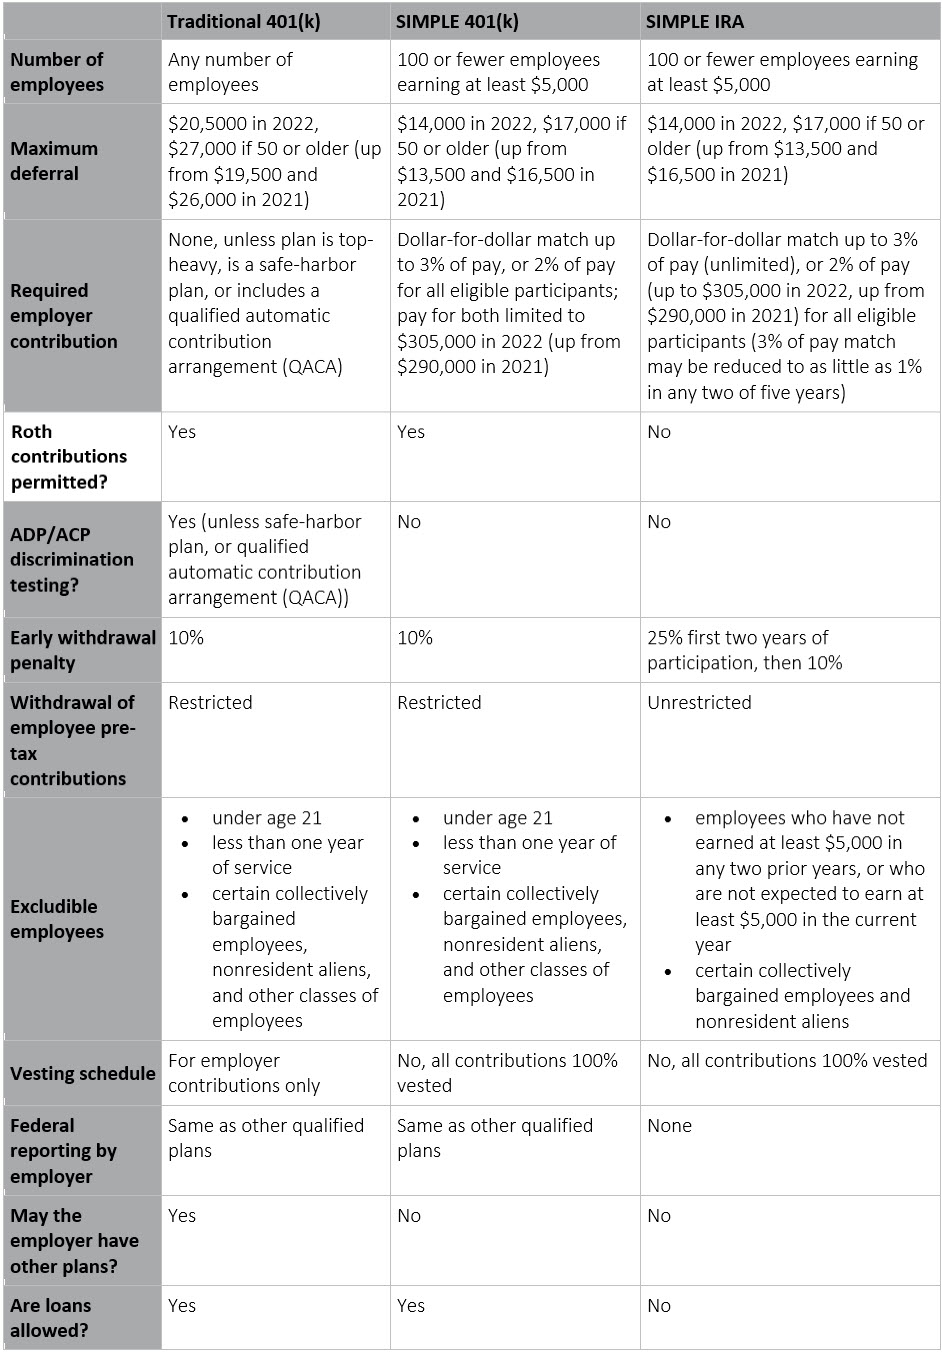 401(k) comparison table